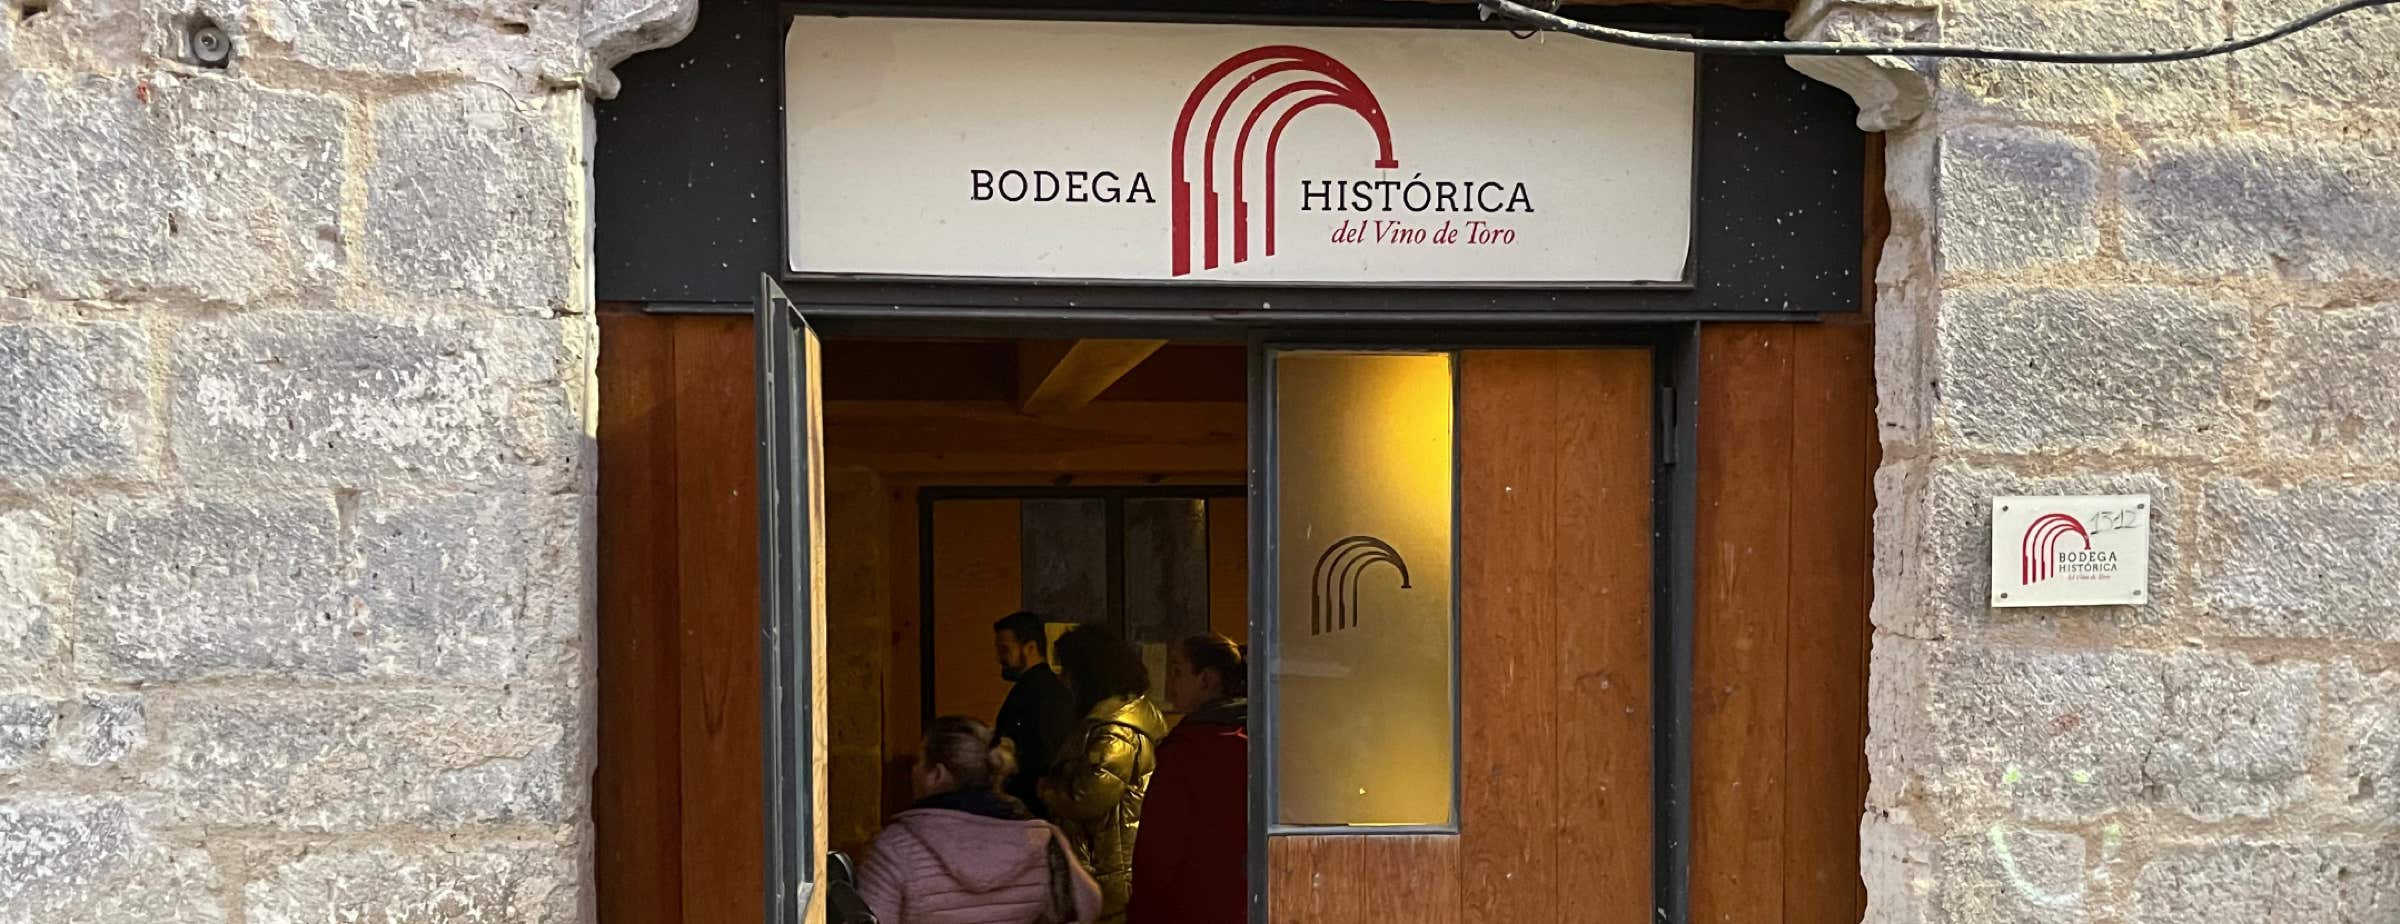 Slika vhoda v Bodega Histórica. Vhod so lesena vrata. Nad vhodom je napis "Bodega Histórica del Vino de Toro". Vrata so odprta in v njih je mogoče videti ljudi. Ob vratih so vidni deli fasade iz sivega kamna.